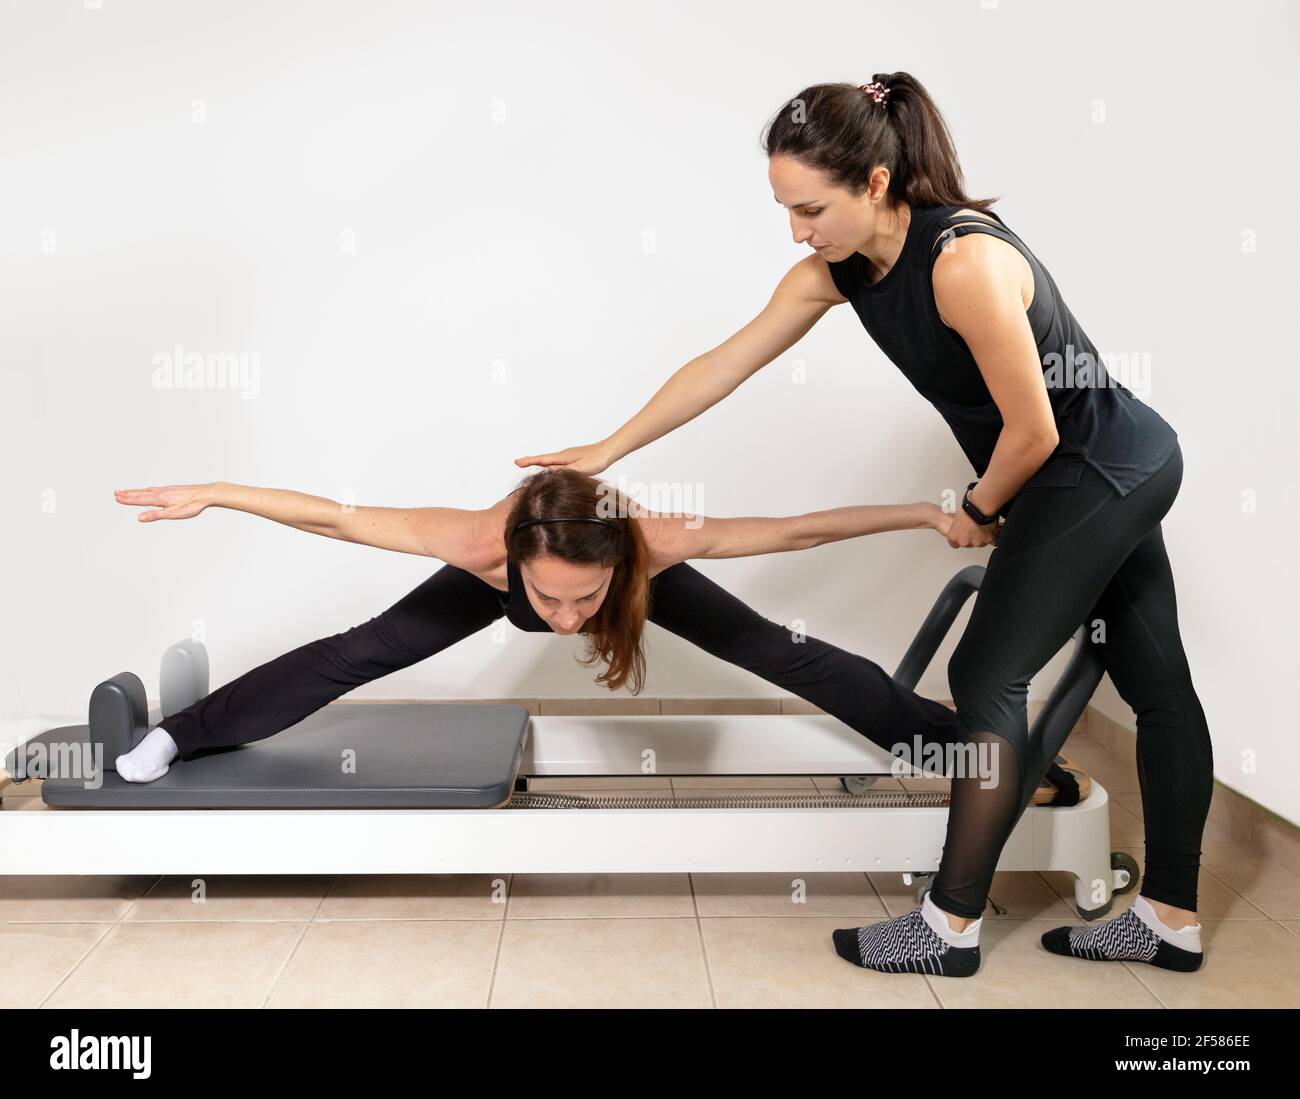 Une femme pratiquant des exercices avec un entraîneur personnel pilates. Banque D'Images